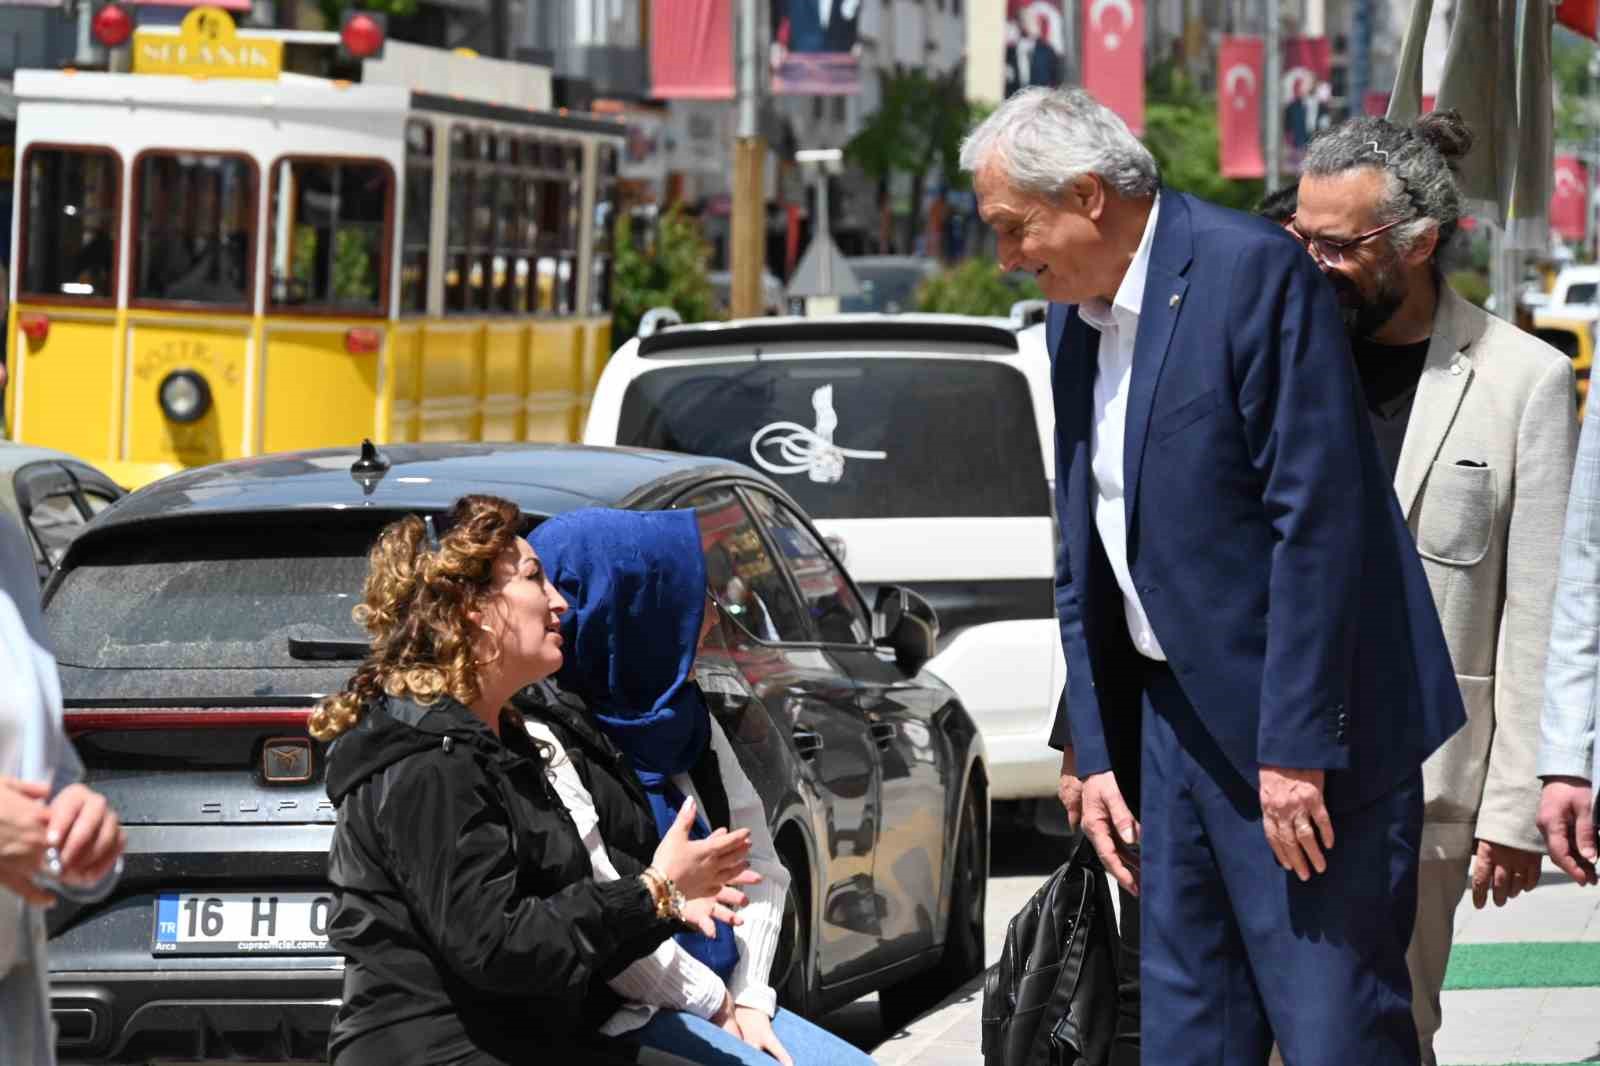 Başkan Bakkalcıoğlu, Engelliler Haftası nedeniyle düzenlenen hayır çarşısını ziyaret etti